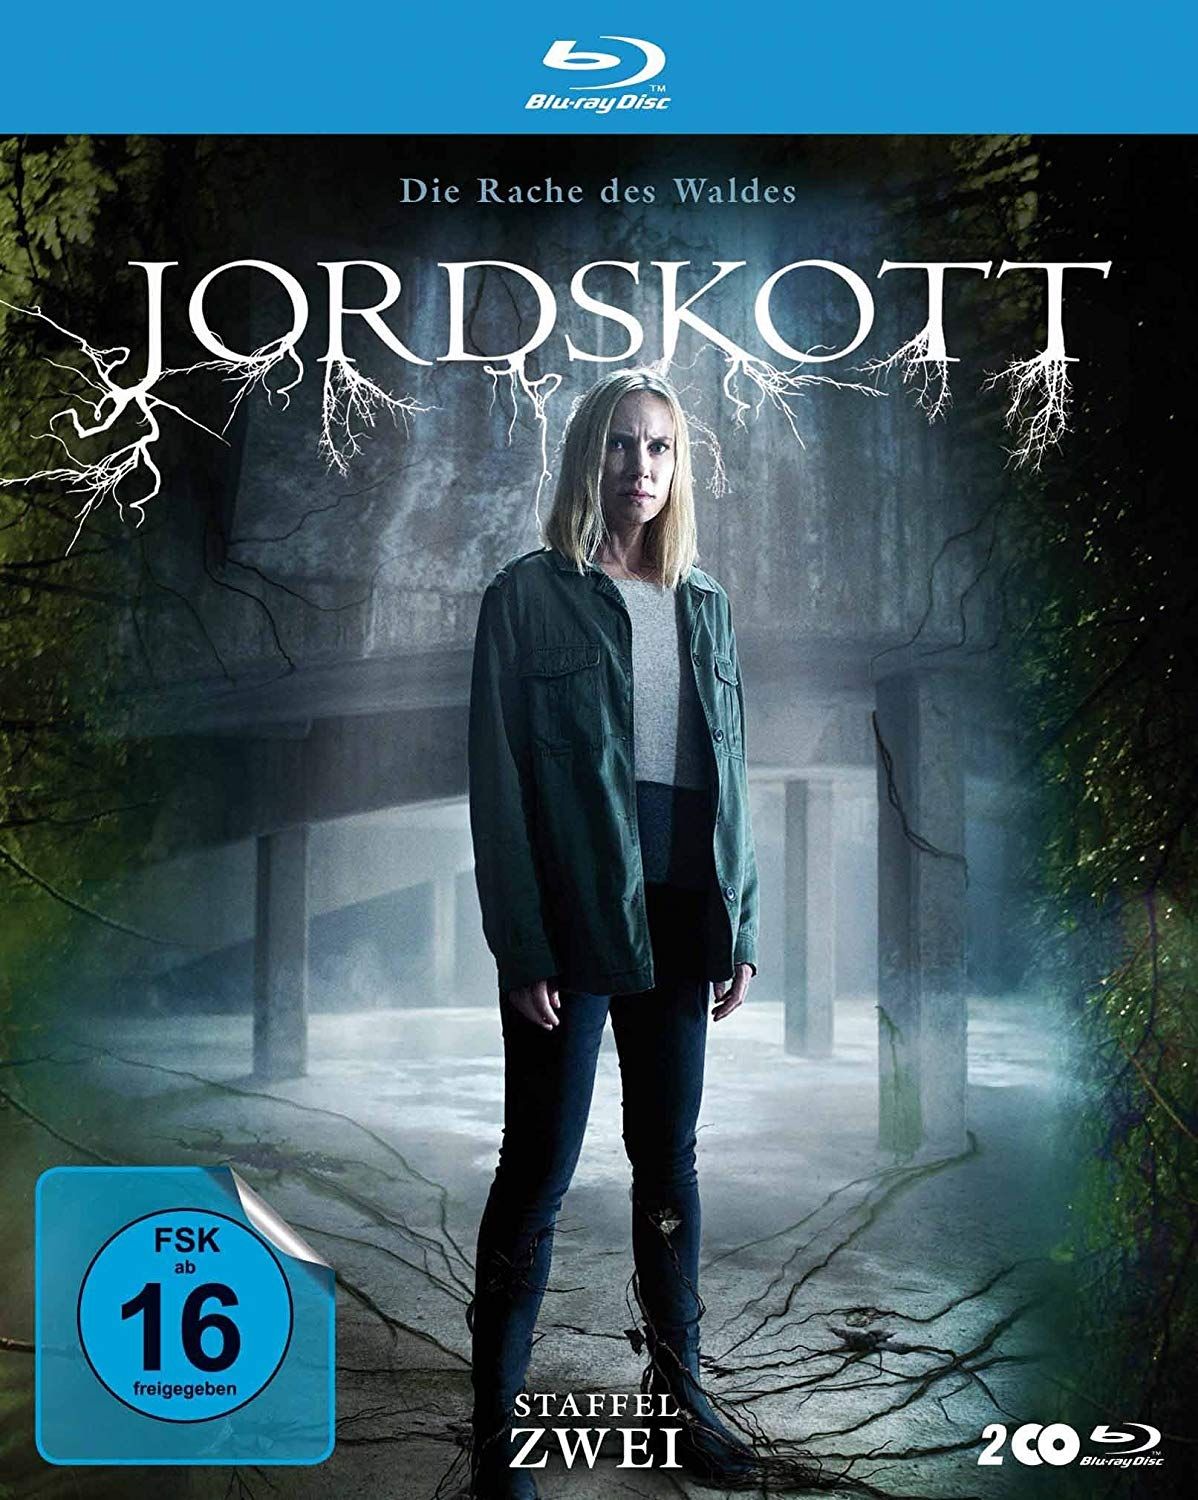 Jordskott - Die Rache des Waldes - Staffel 2 (2 Discs) (BLURAY)